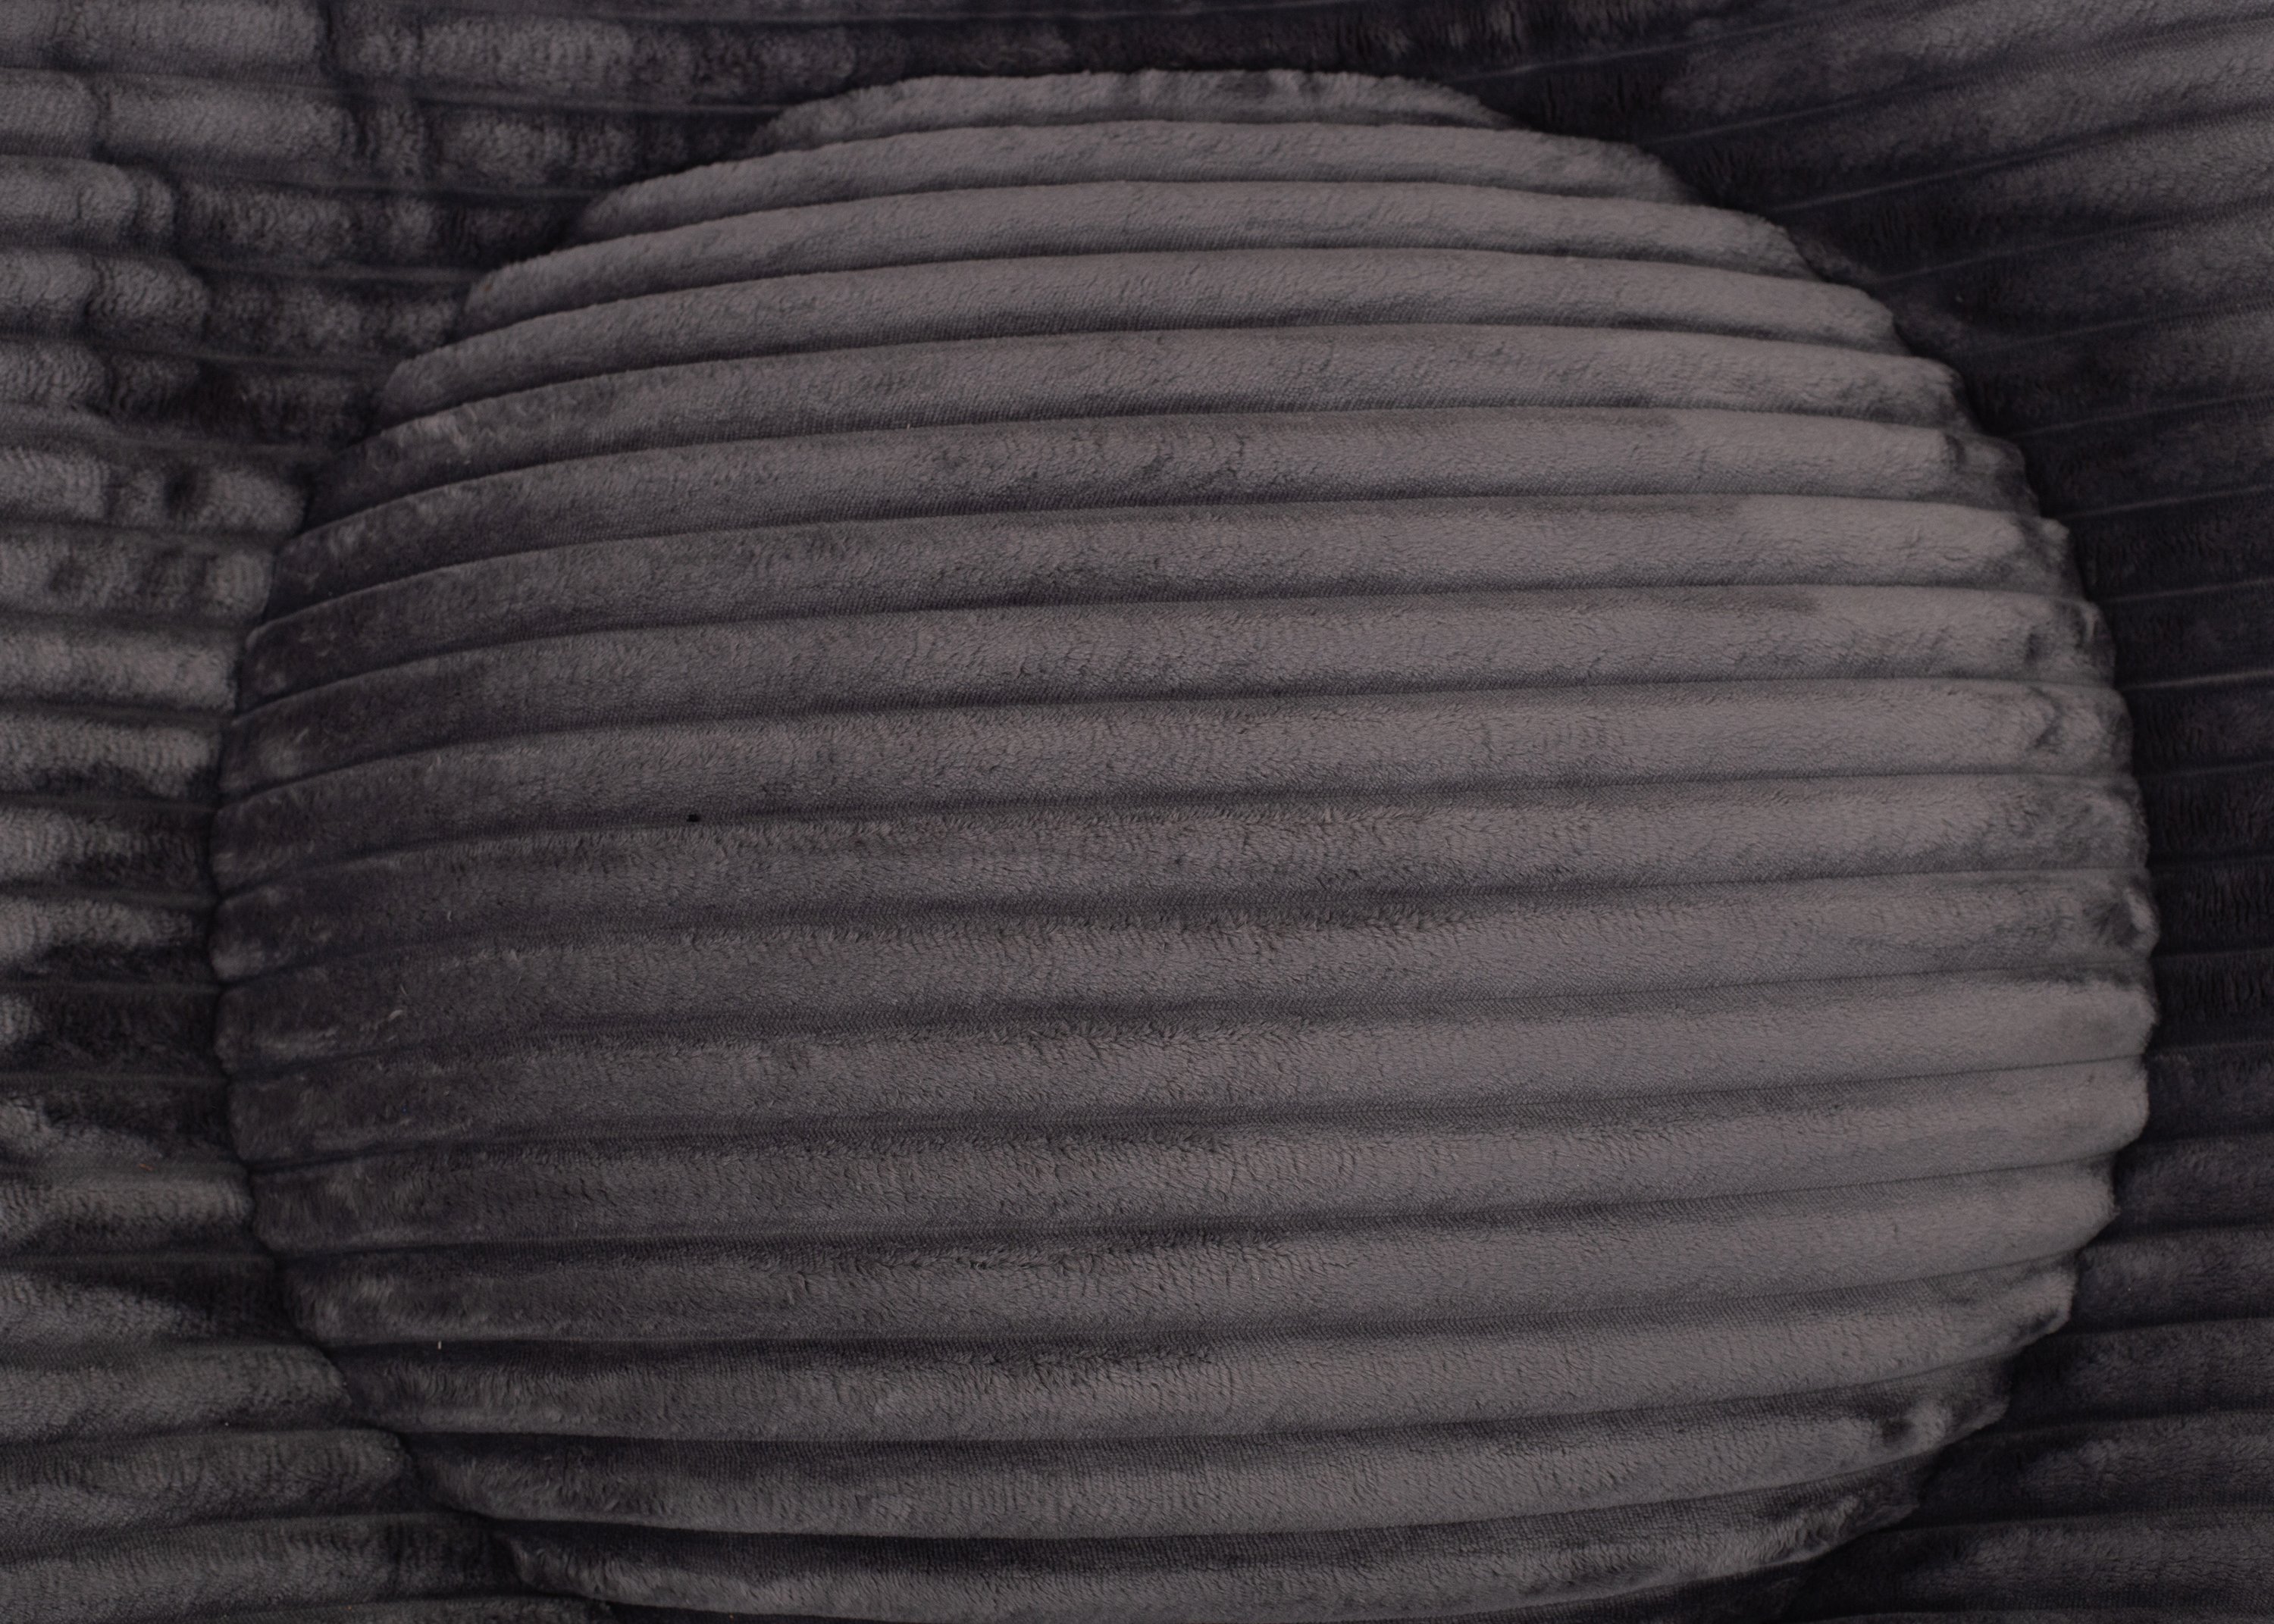 Wau-Bed Cuddly Cord Dark Grey Oval-L (120x100cm)